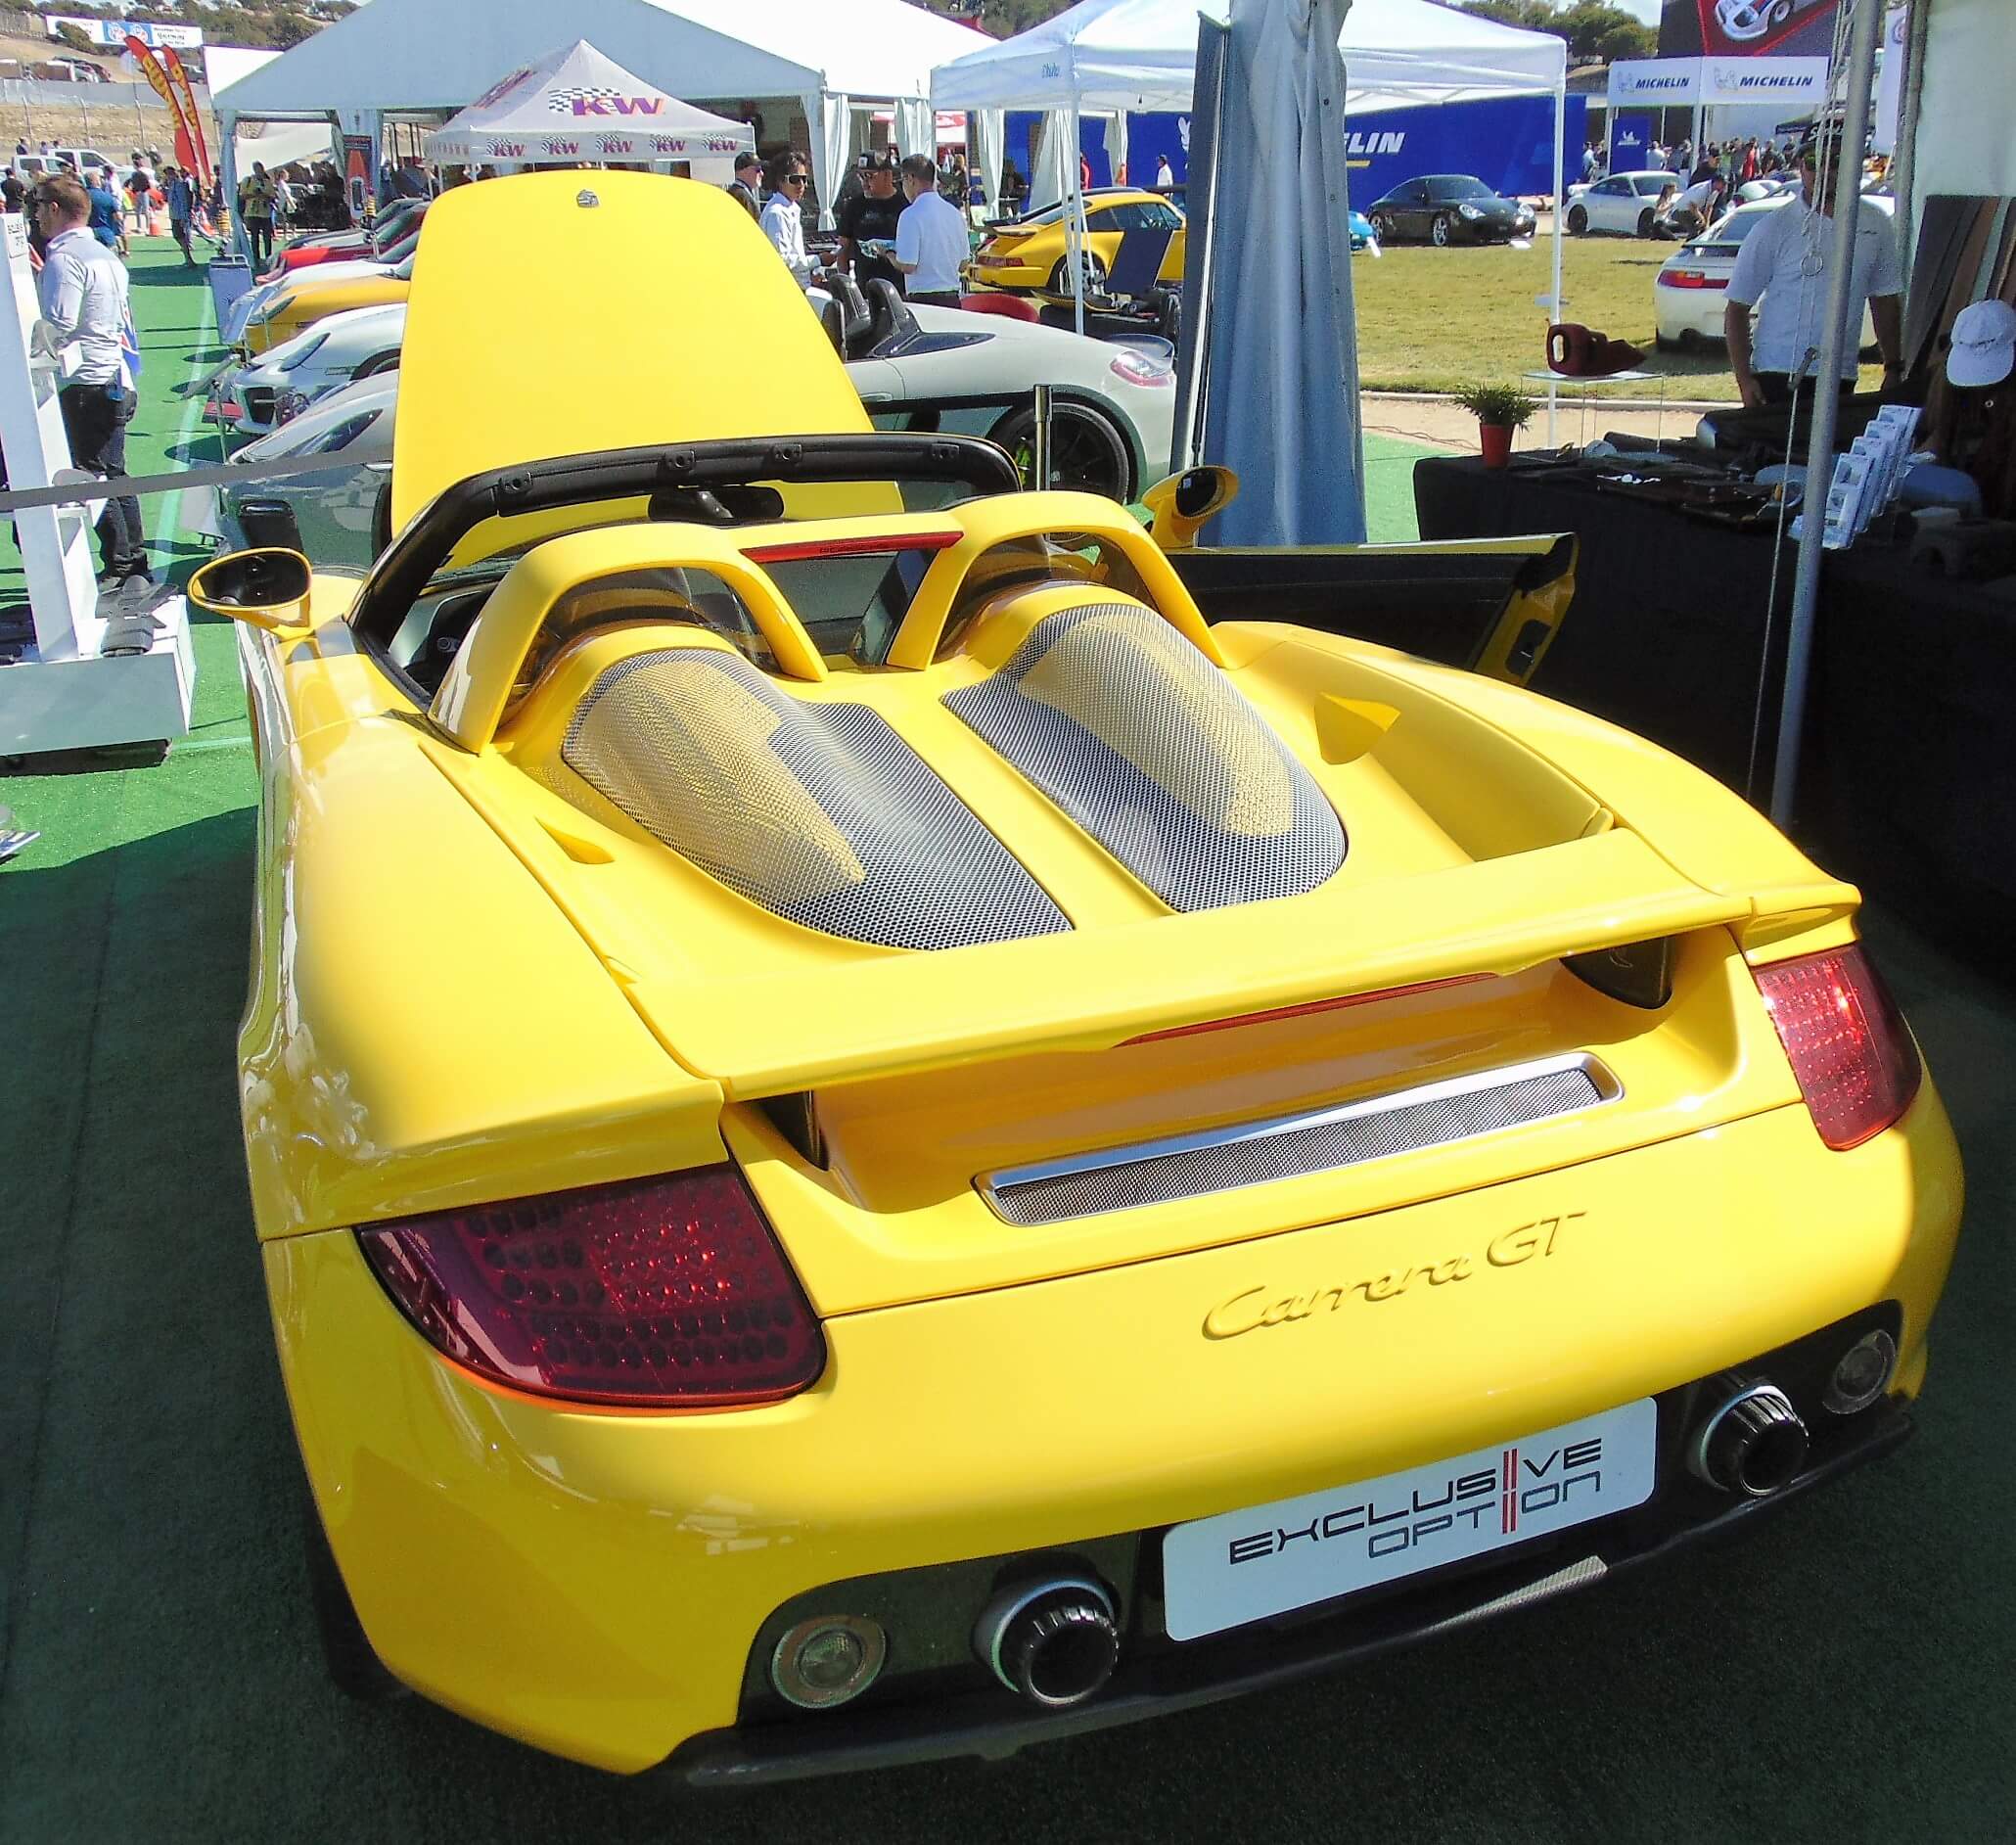 2005 Porsche Carrera GT yellow